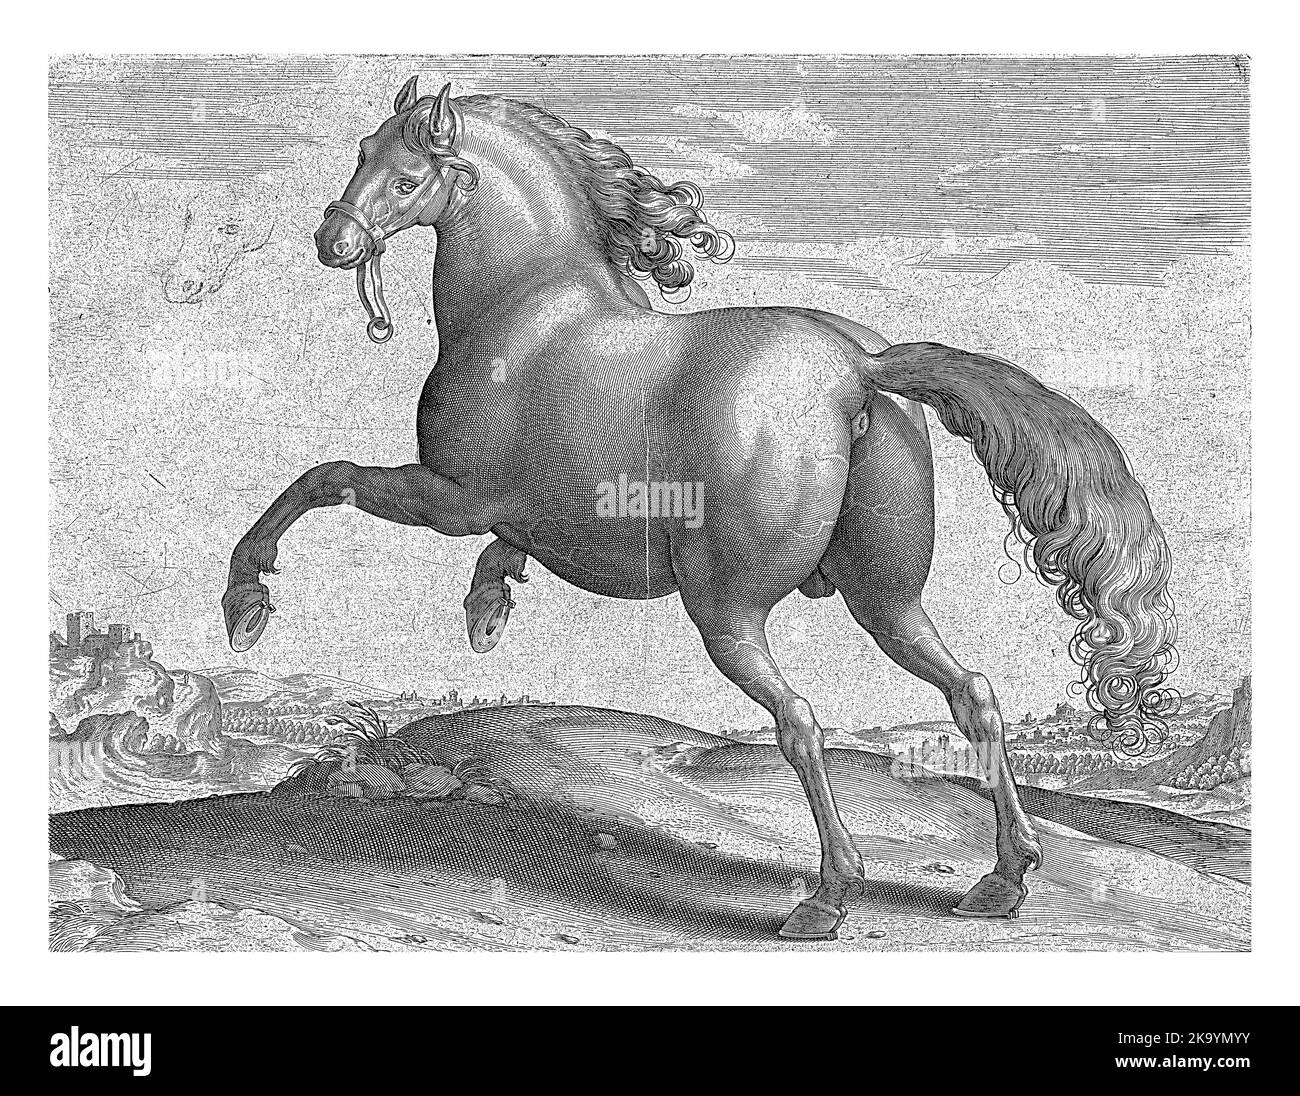 Ein spanisches Pferd (Hispanus Alter), von hinten gesehen. Es regt sich auf. Der Druck hat eine lateinische Beschriftung und ist Teil des ersten Teils einer 39-teiligen Serie über Th Stockfoto